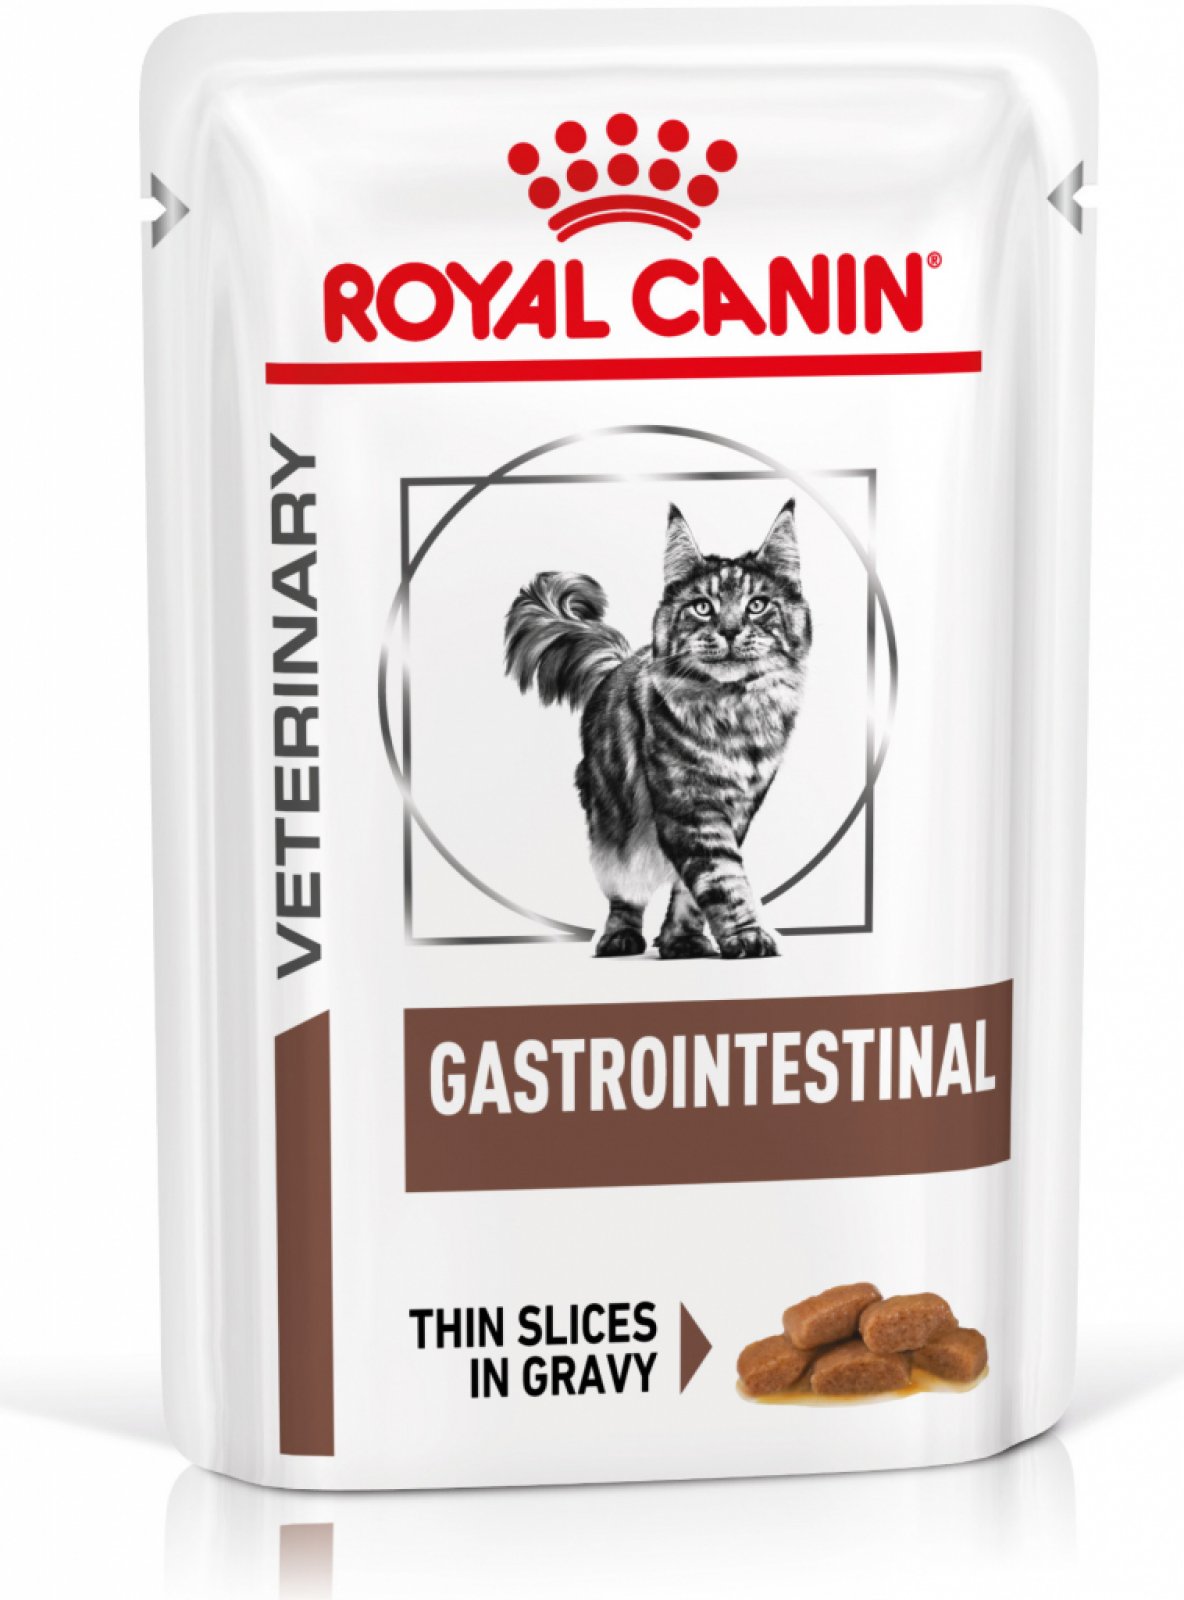 Royal Canin Veterinary Feline Gastrointestinal 85g